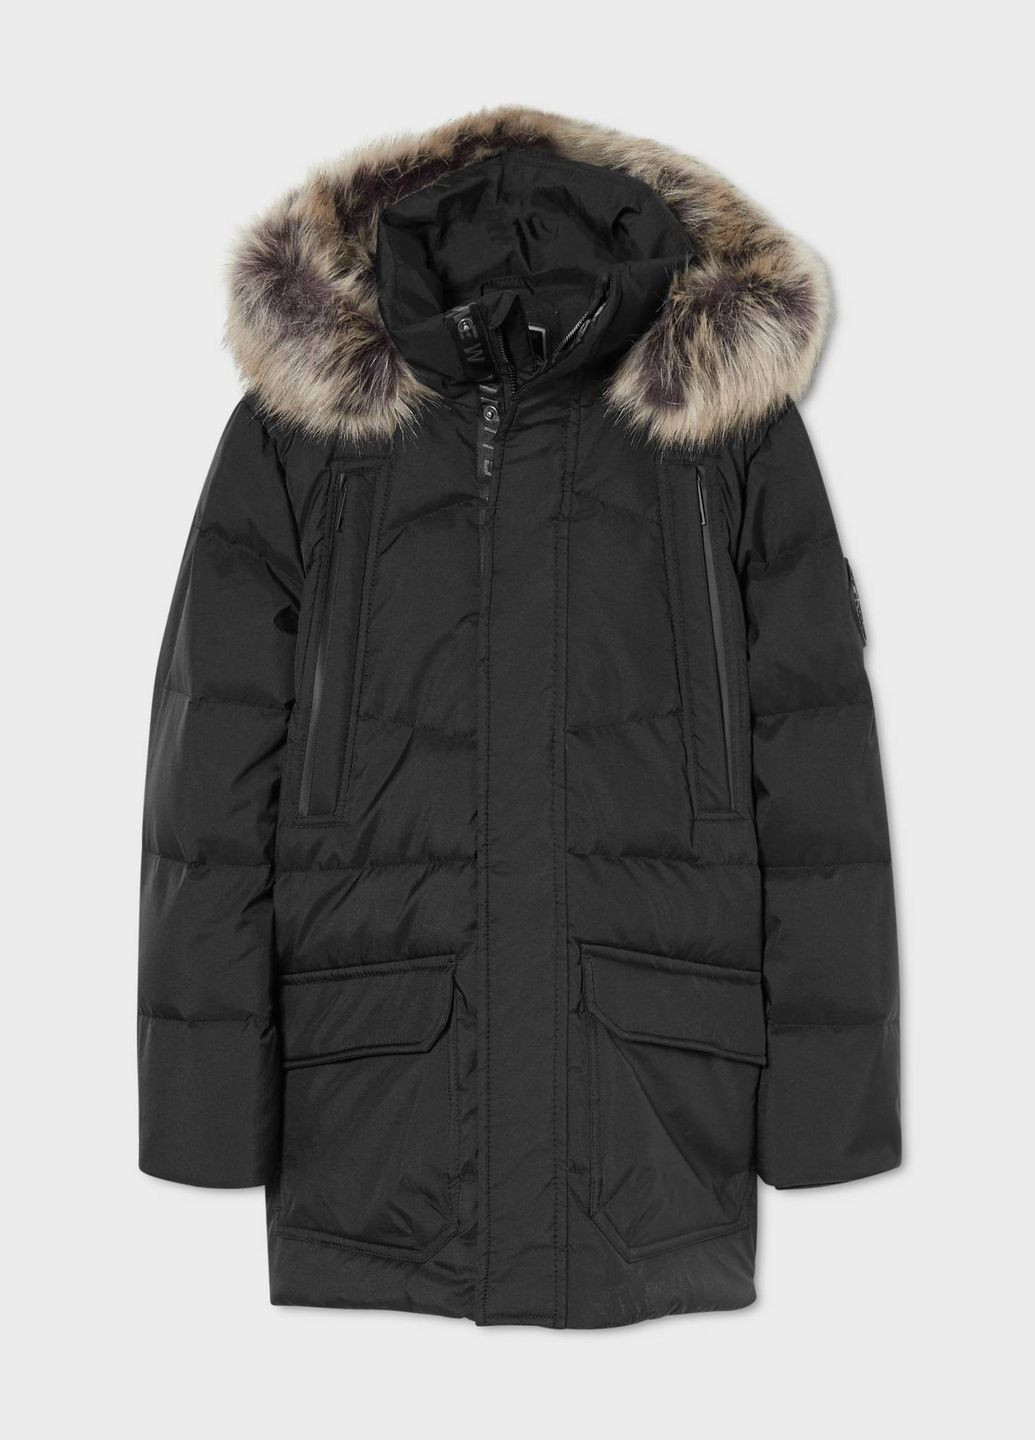 Черная зимняя зимняя куртка для мальчика 152 размер черная 2141443 C&A